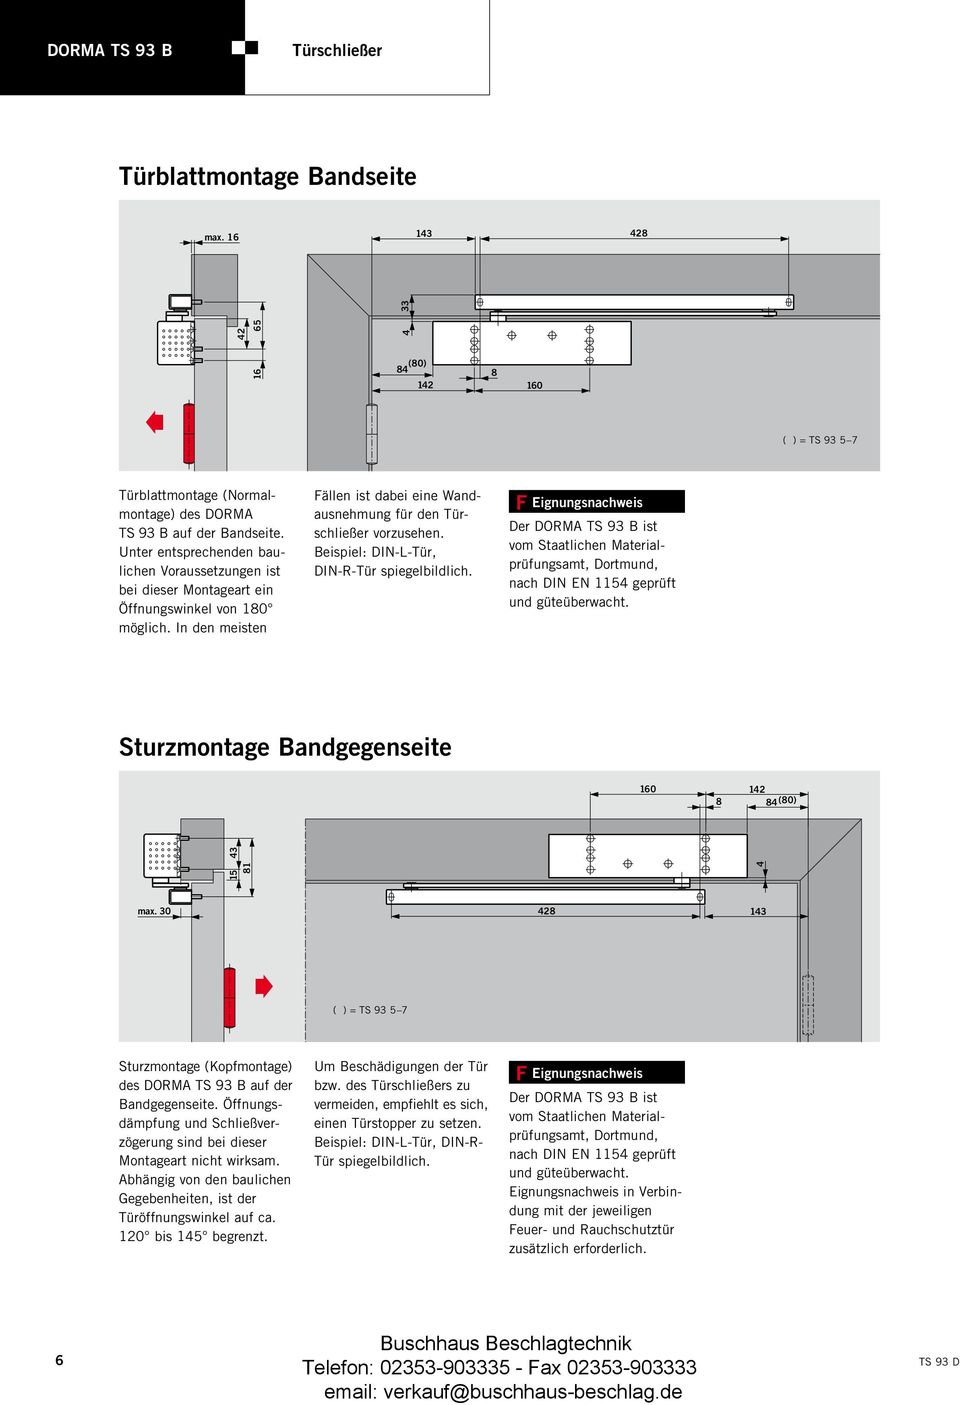 Beispiel: DIN-L-Tür, DIN-R-Tür spiegelbildlich. F Eignungsnachweis Der DORMA TS 93 B ist vom Staatlichen Materialprüfungsamt, Dortmund, nach DIN EN 1154 geprüft und güteüberwacht.